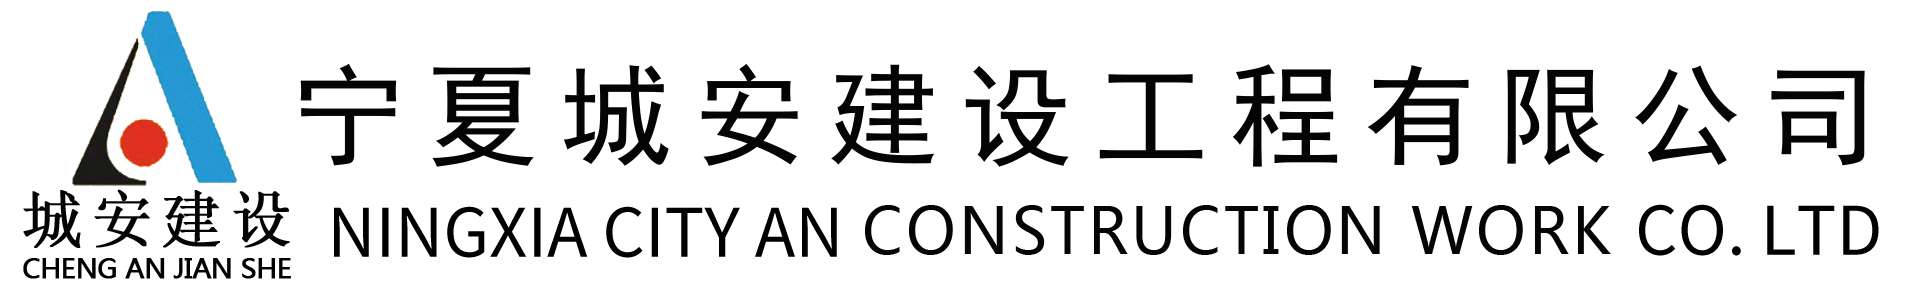 宁夏城安建设工程有限公司